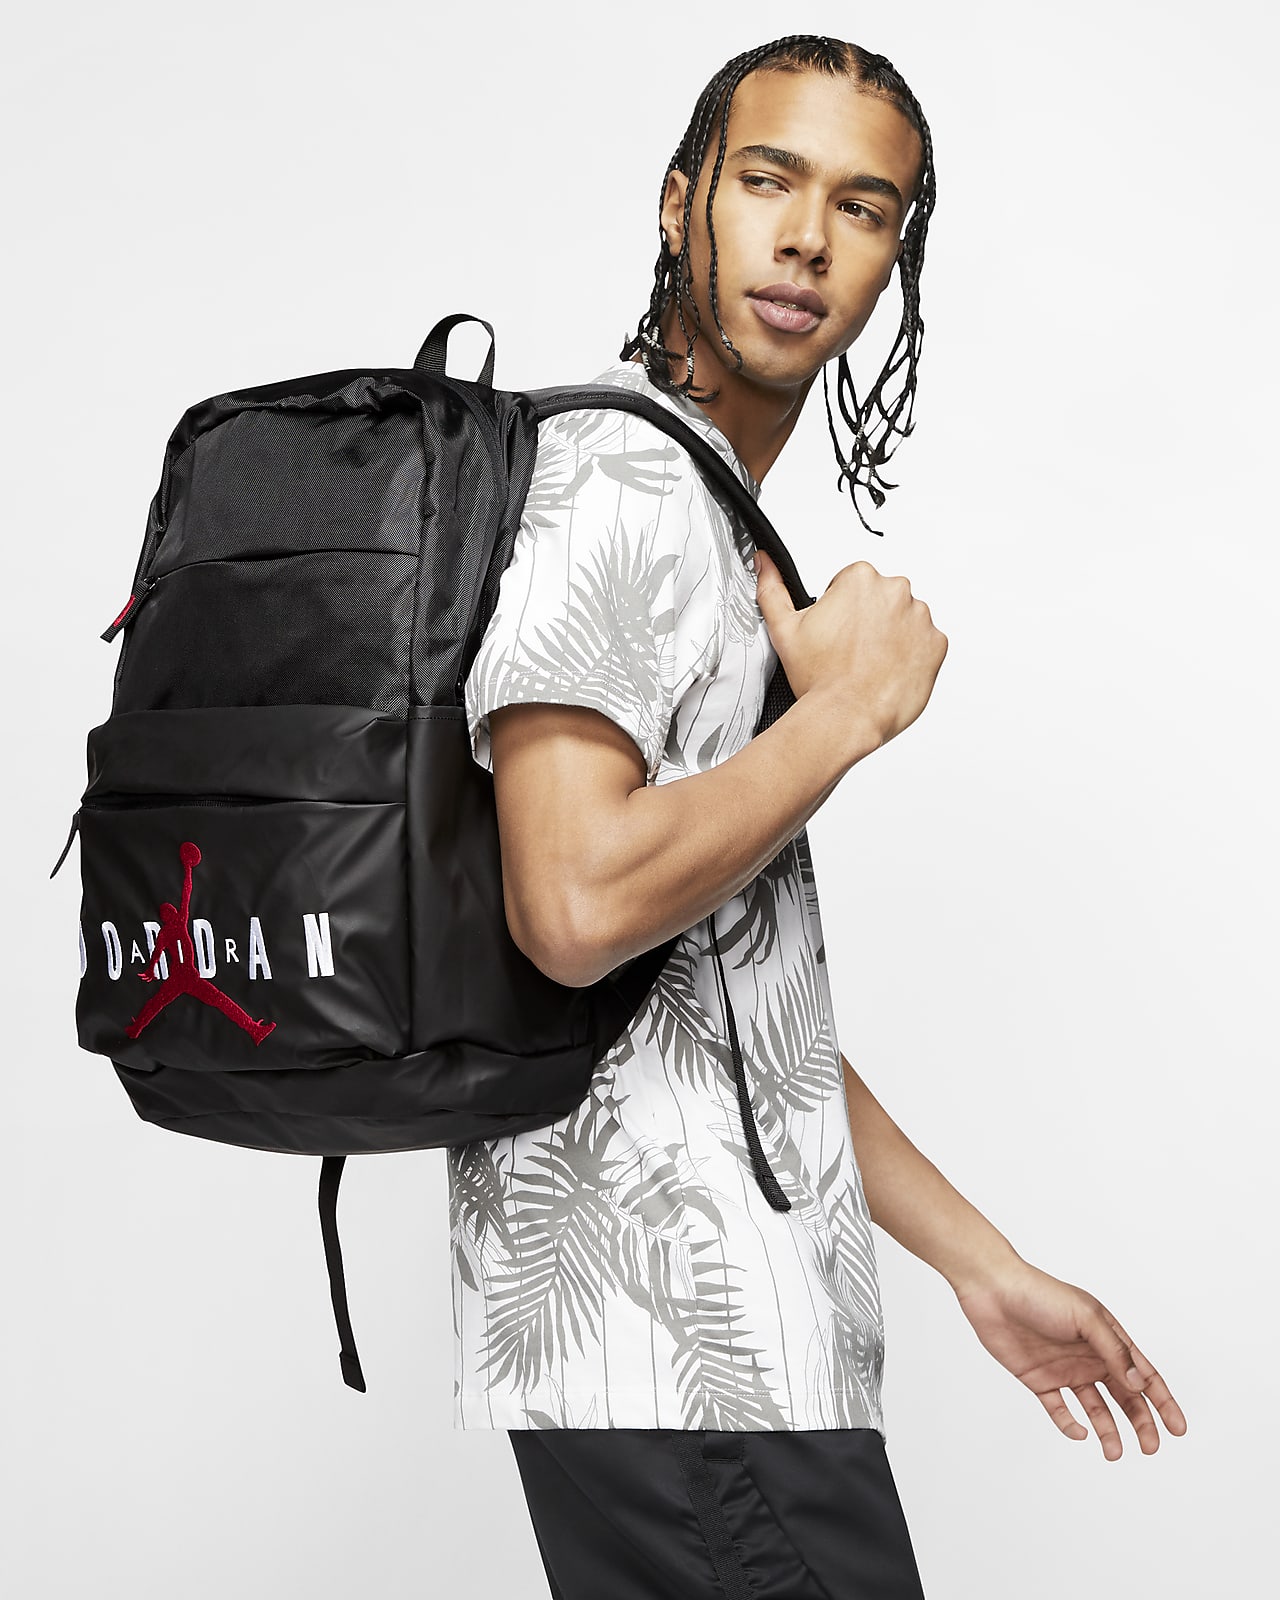 cheap nike air jordan backpacks